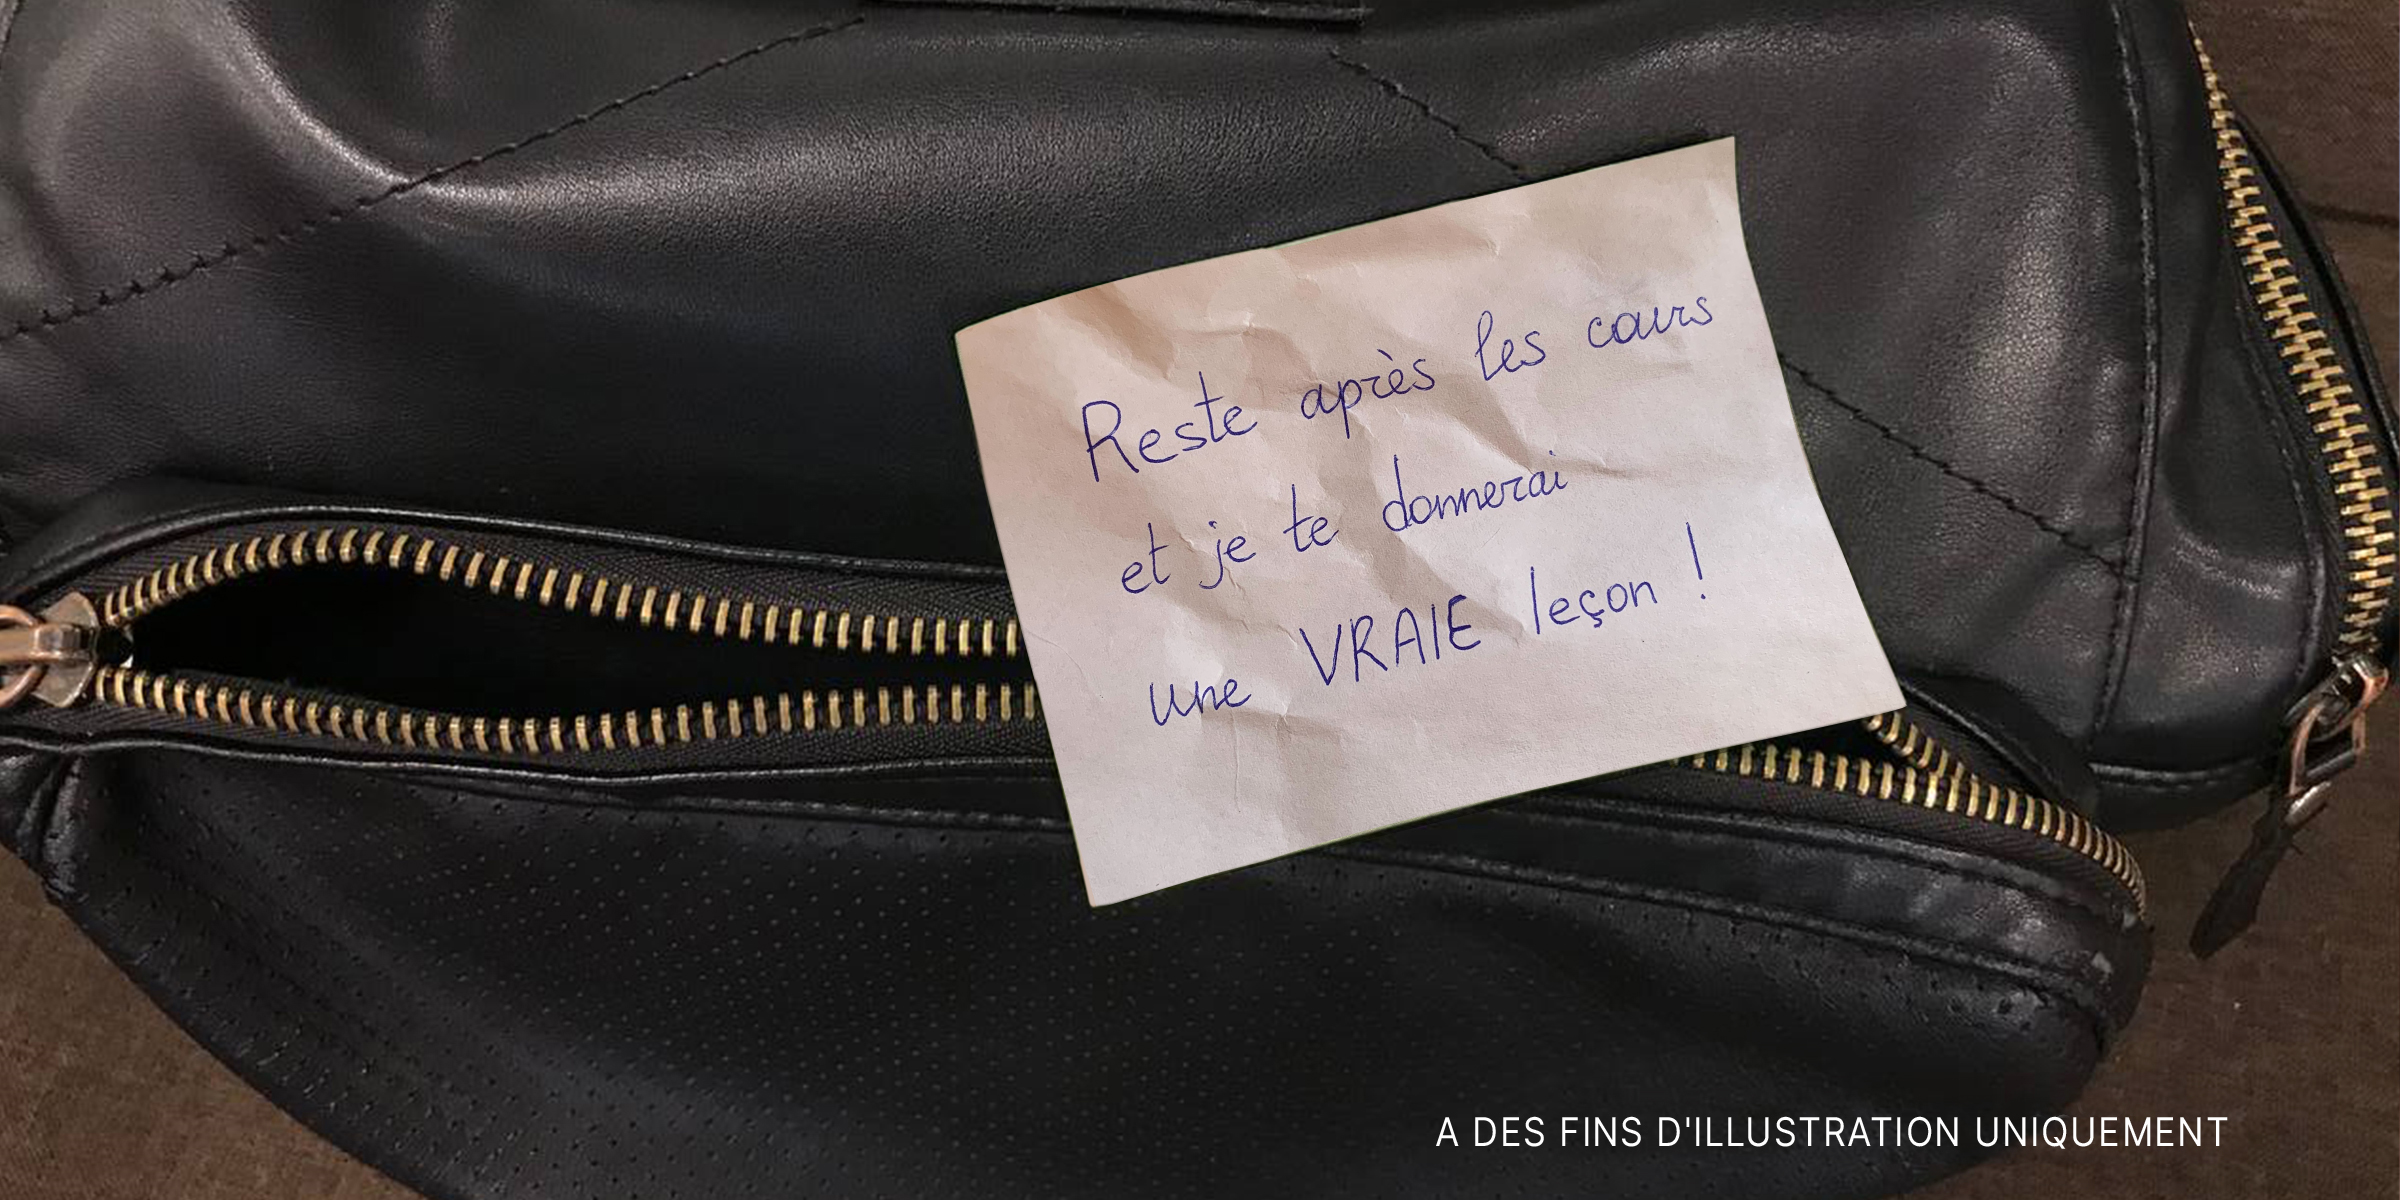 Une note laissée sur un sac à dos | Source : AmoMama